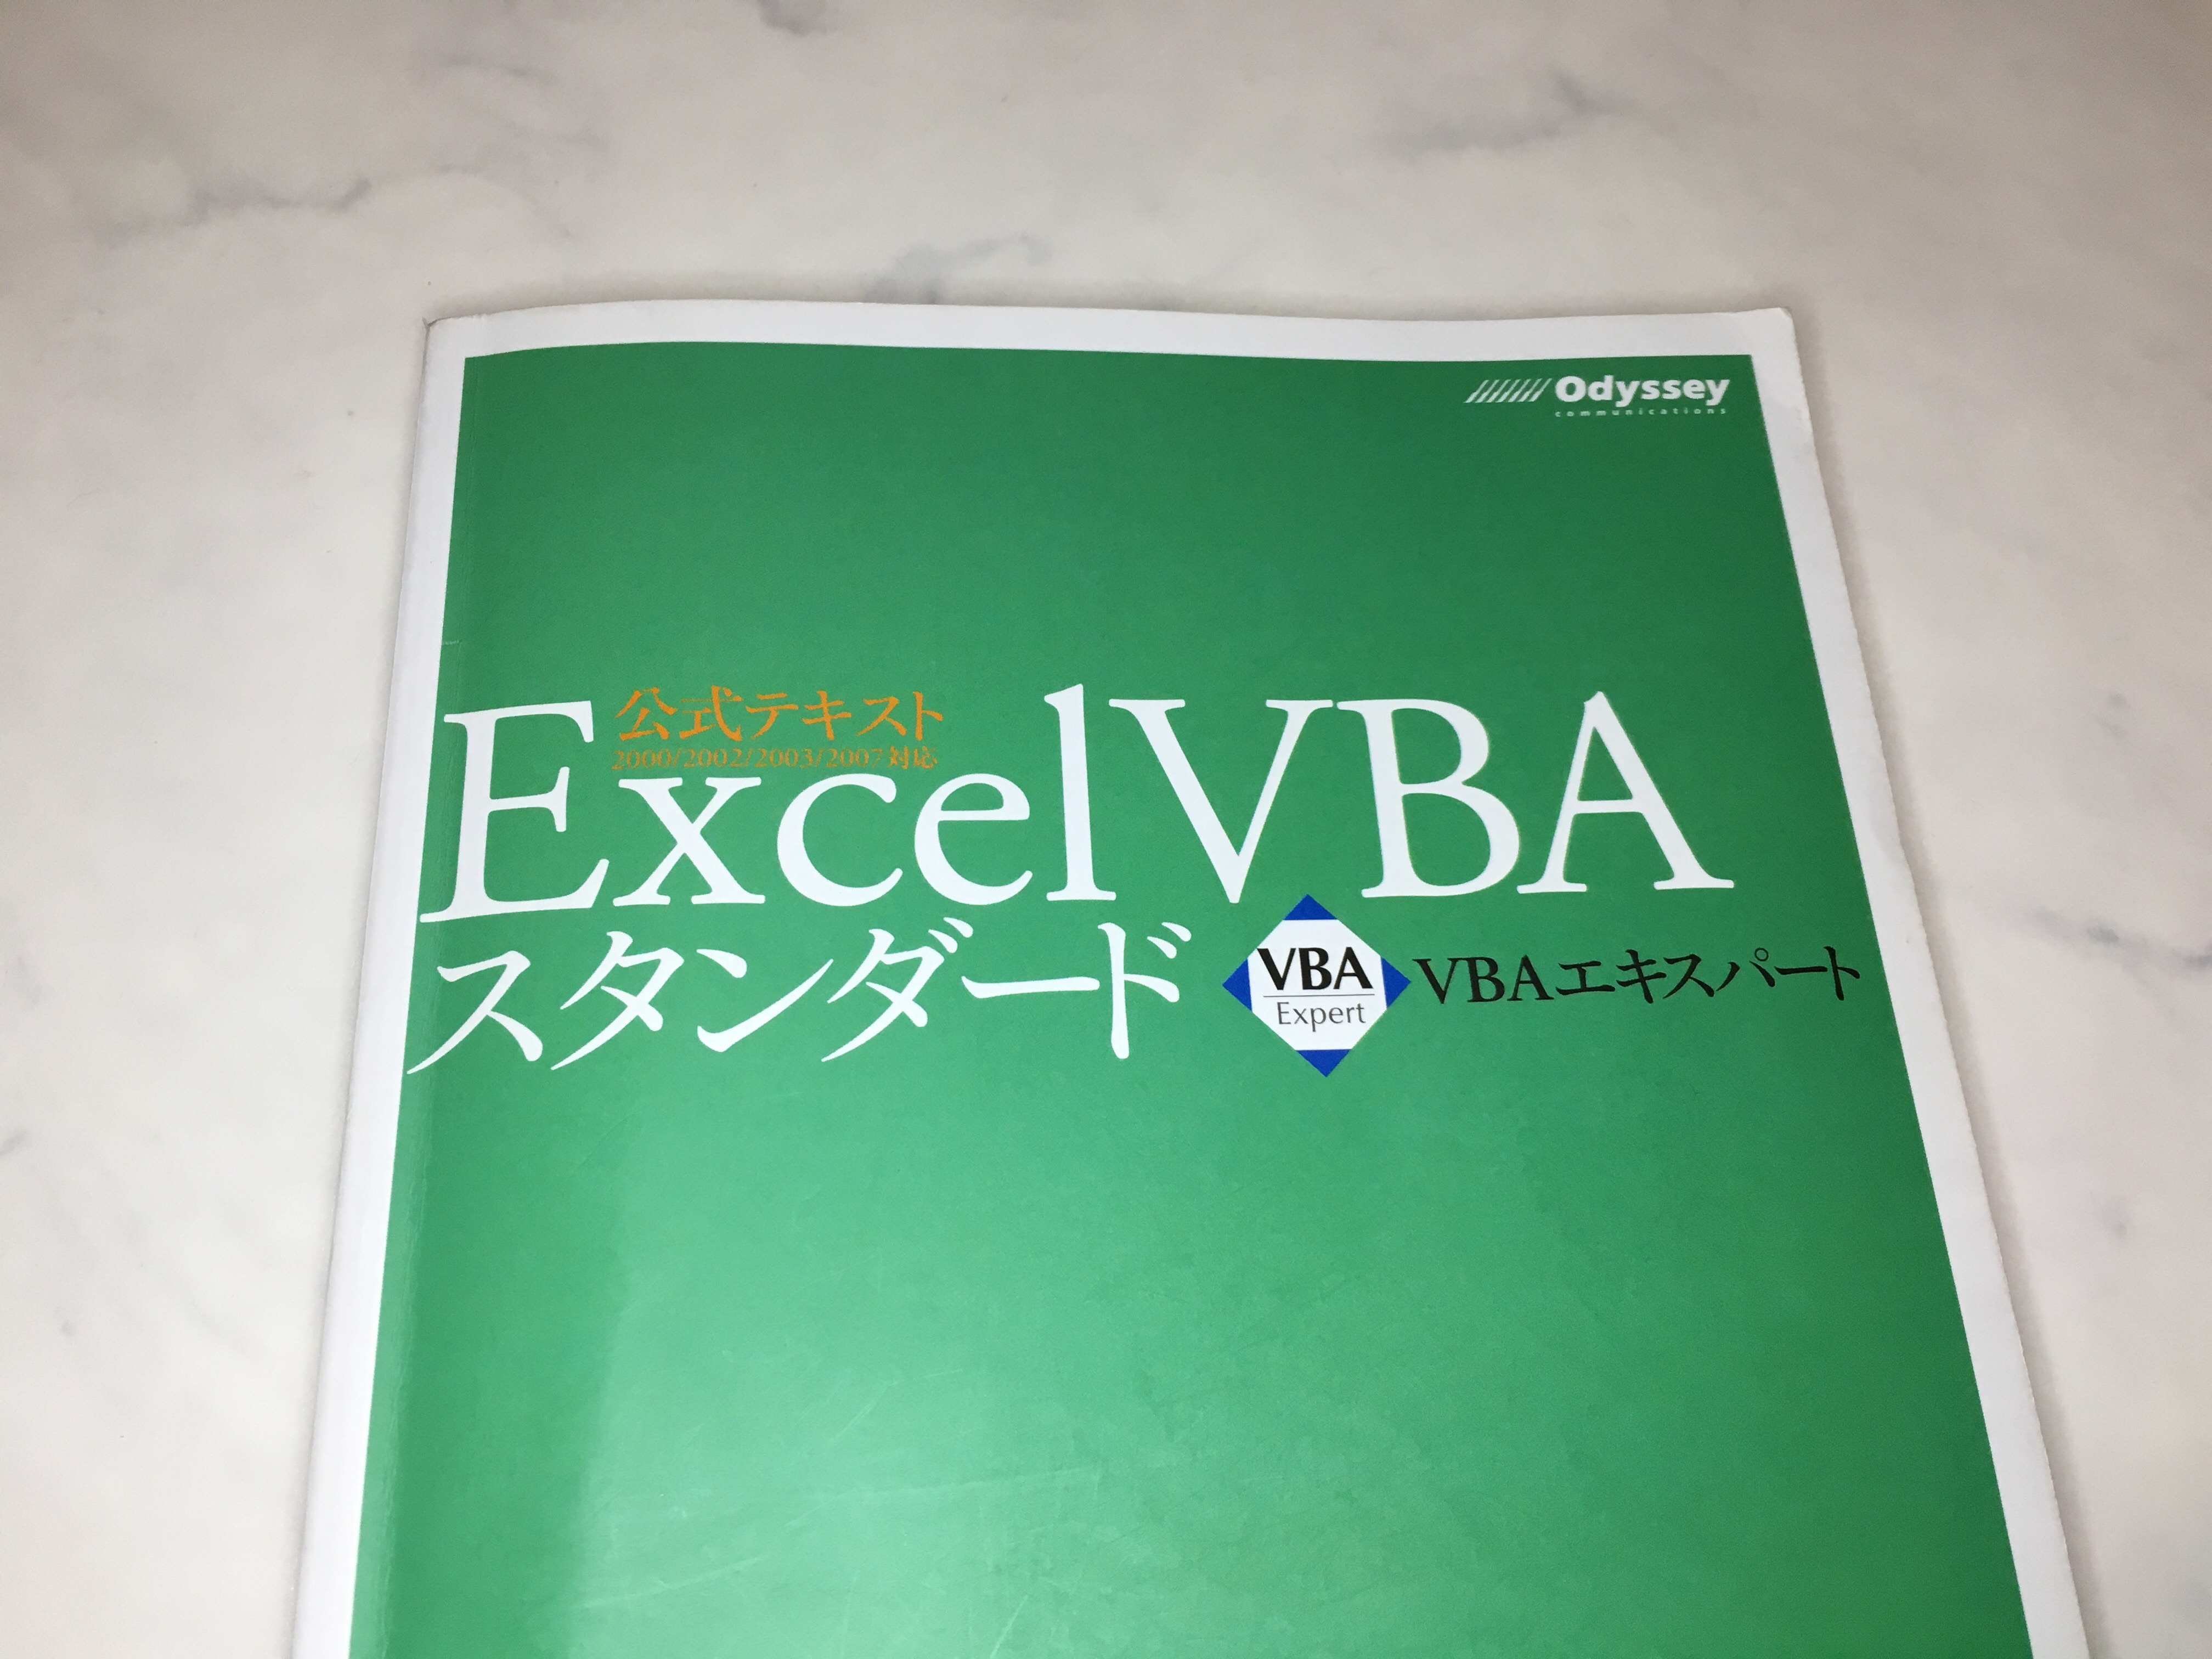 マクロ Vba のスキルを認定する資格 Vba エキスパート Excel Vba スタンダート の合格体験と勉強方法 はじめろぐ